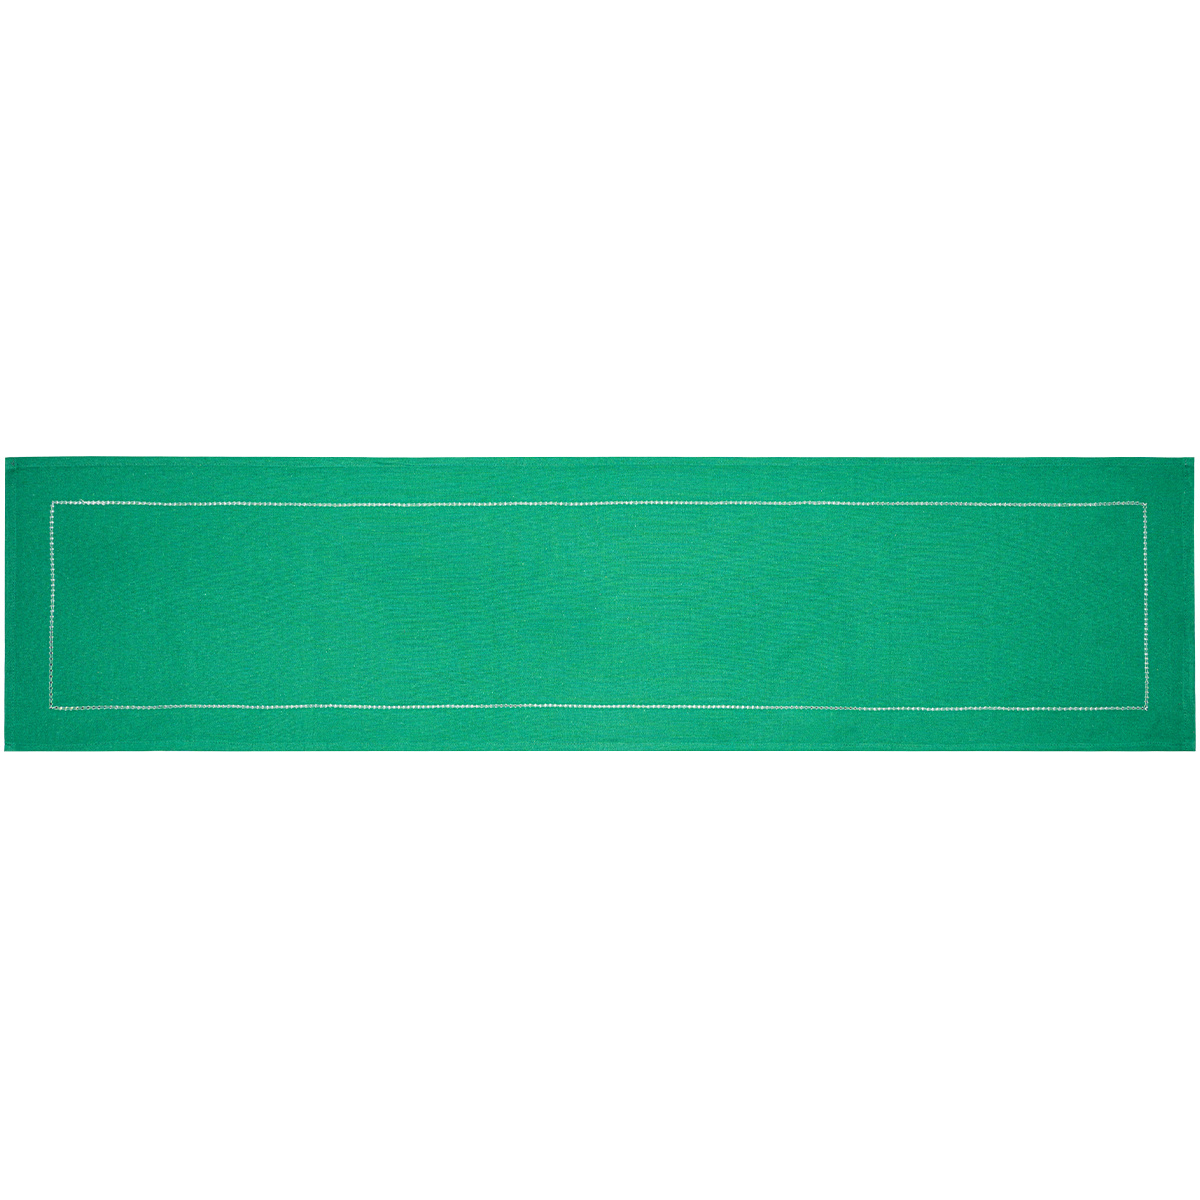 Bieżnik Heda zielony, 33 x 130 cm